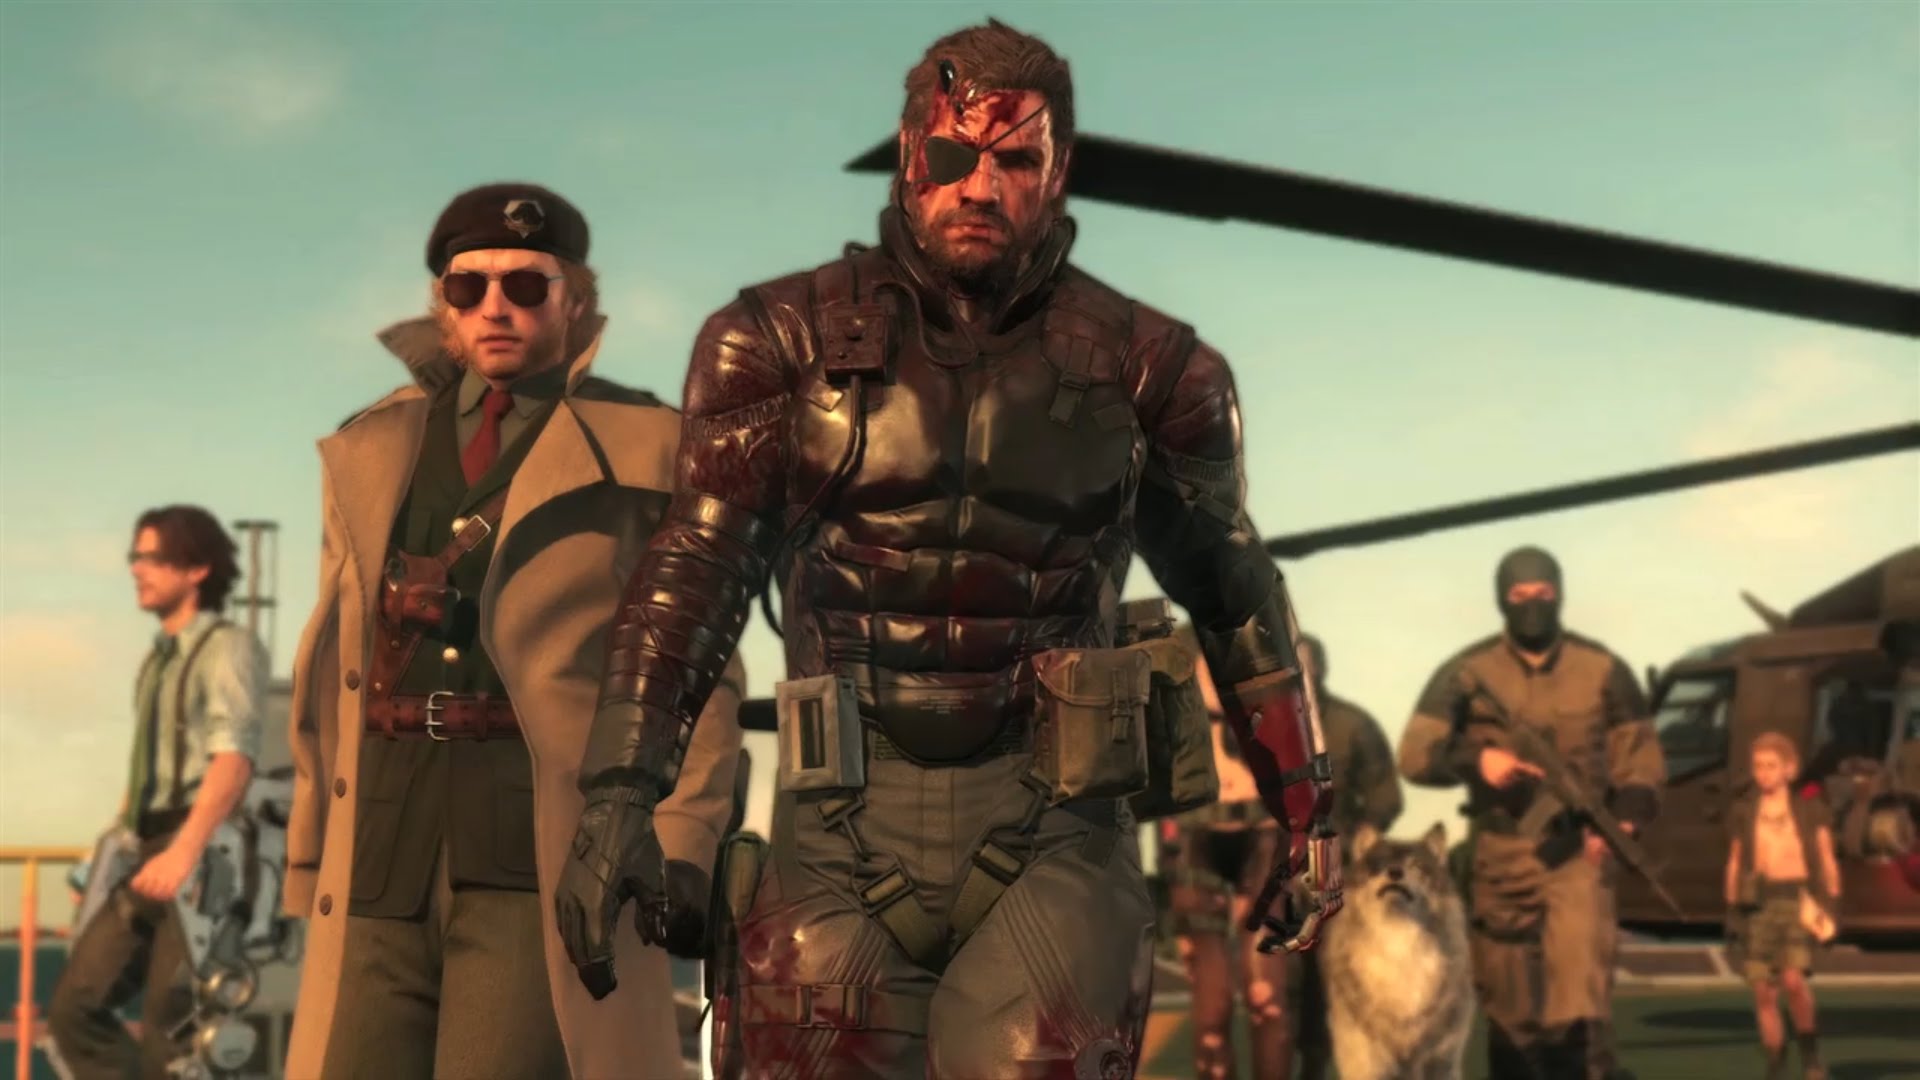 شيء ما يتعلق بسلسلة Metal Gear Solid سيتم الكشف عنه قريبا جدا Vga4a